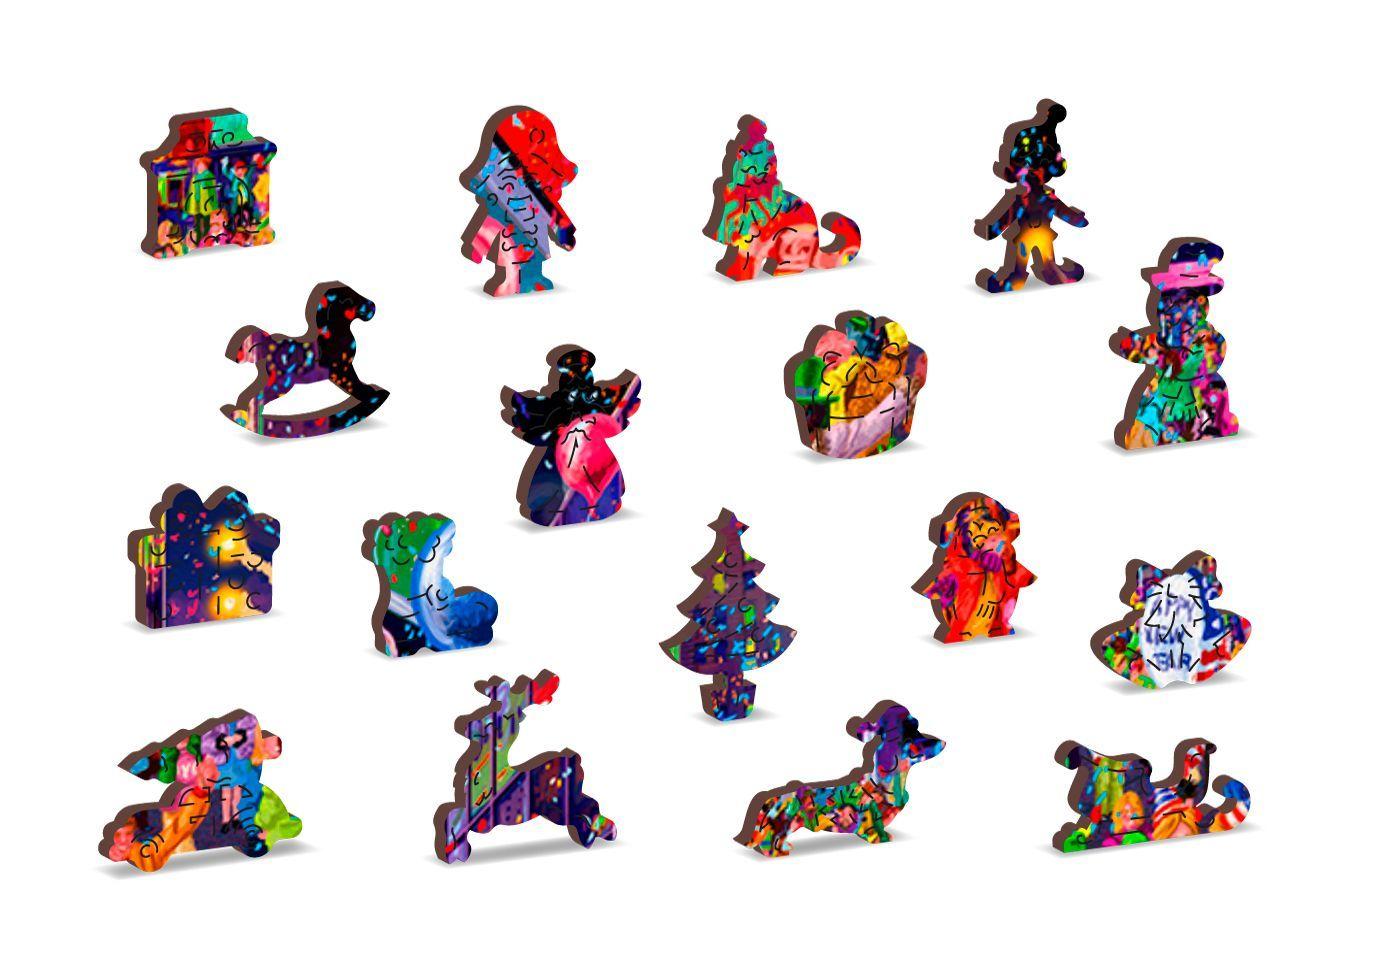 Drewniane Puzzle z figurkami - Sylwester, 505 elementów